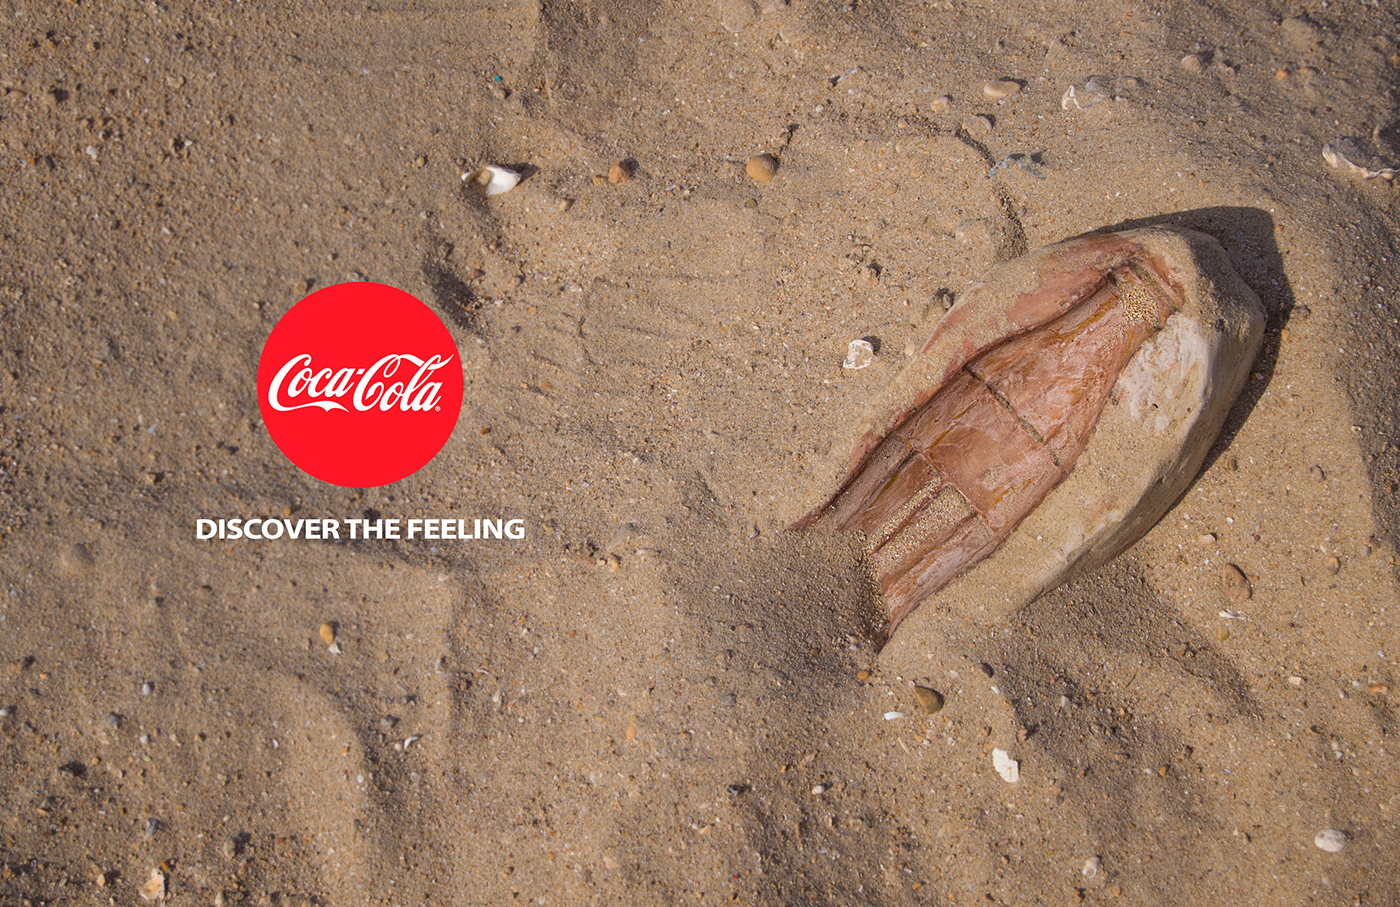 Coca Cola publicidad arqueologico huella